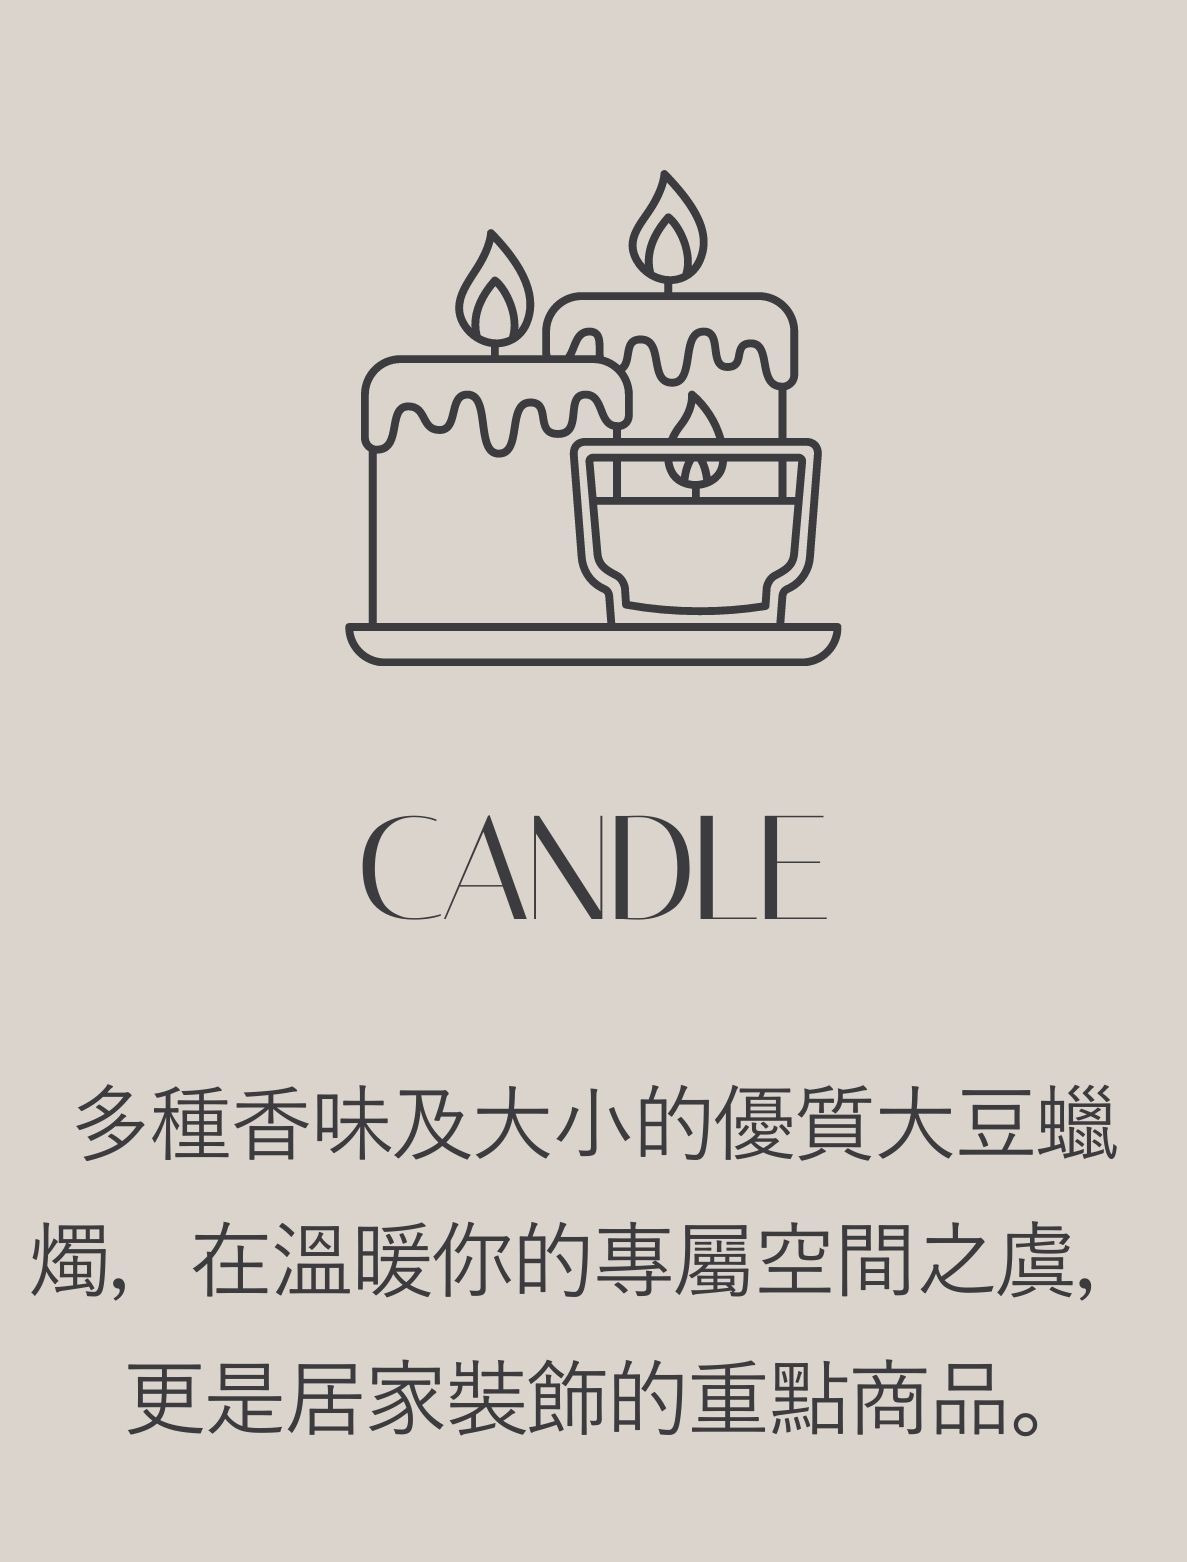 蠟燭分類, candle